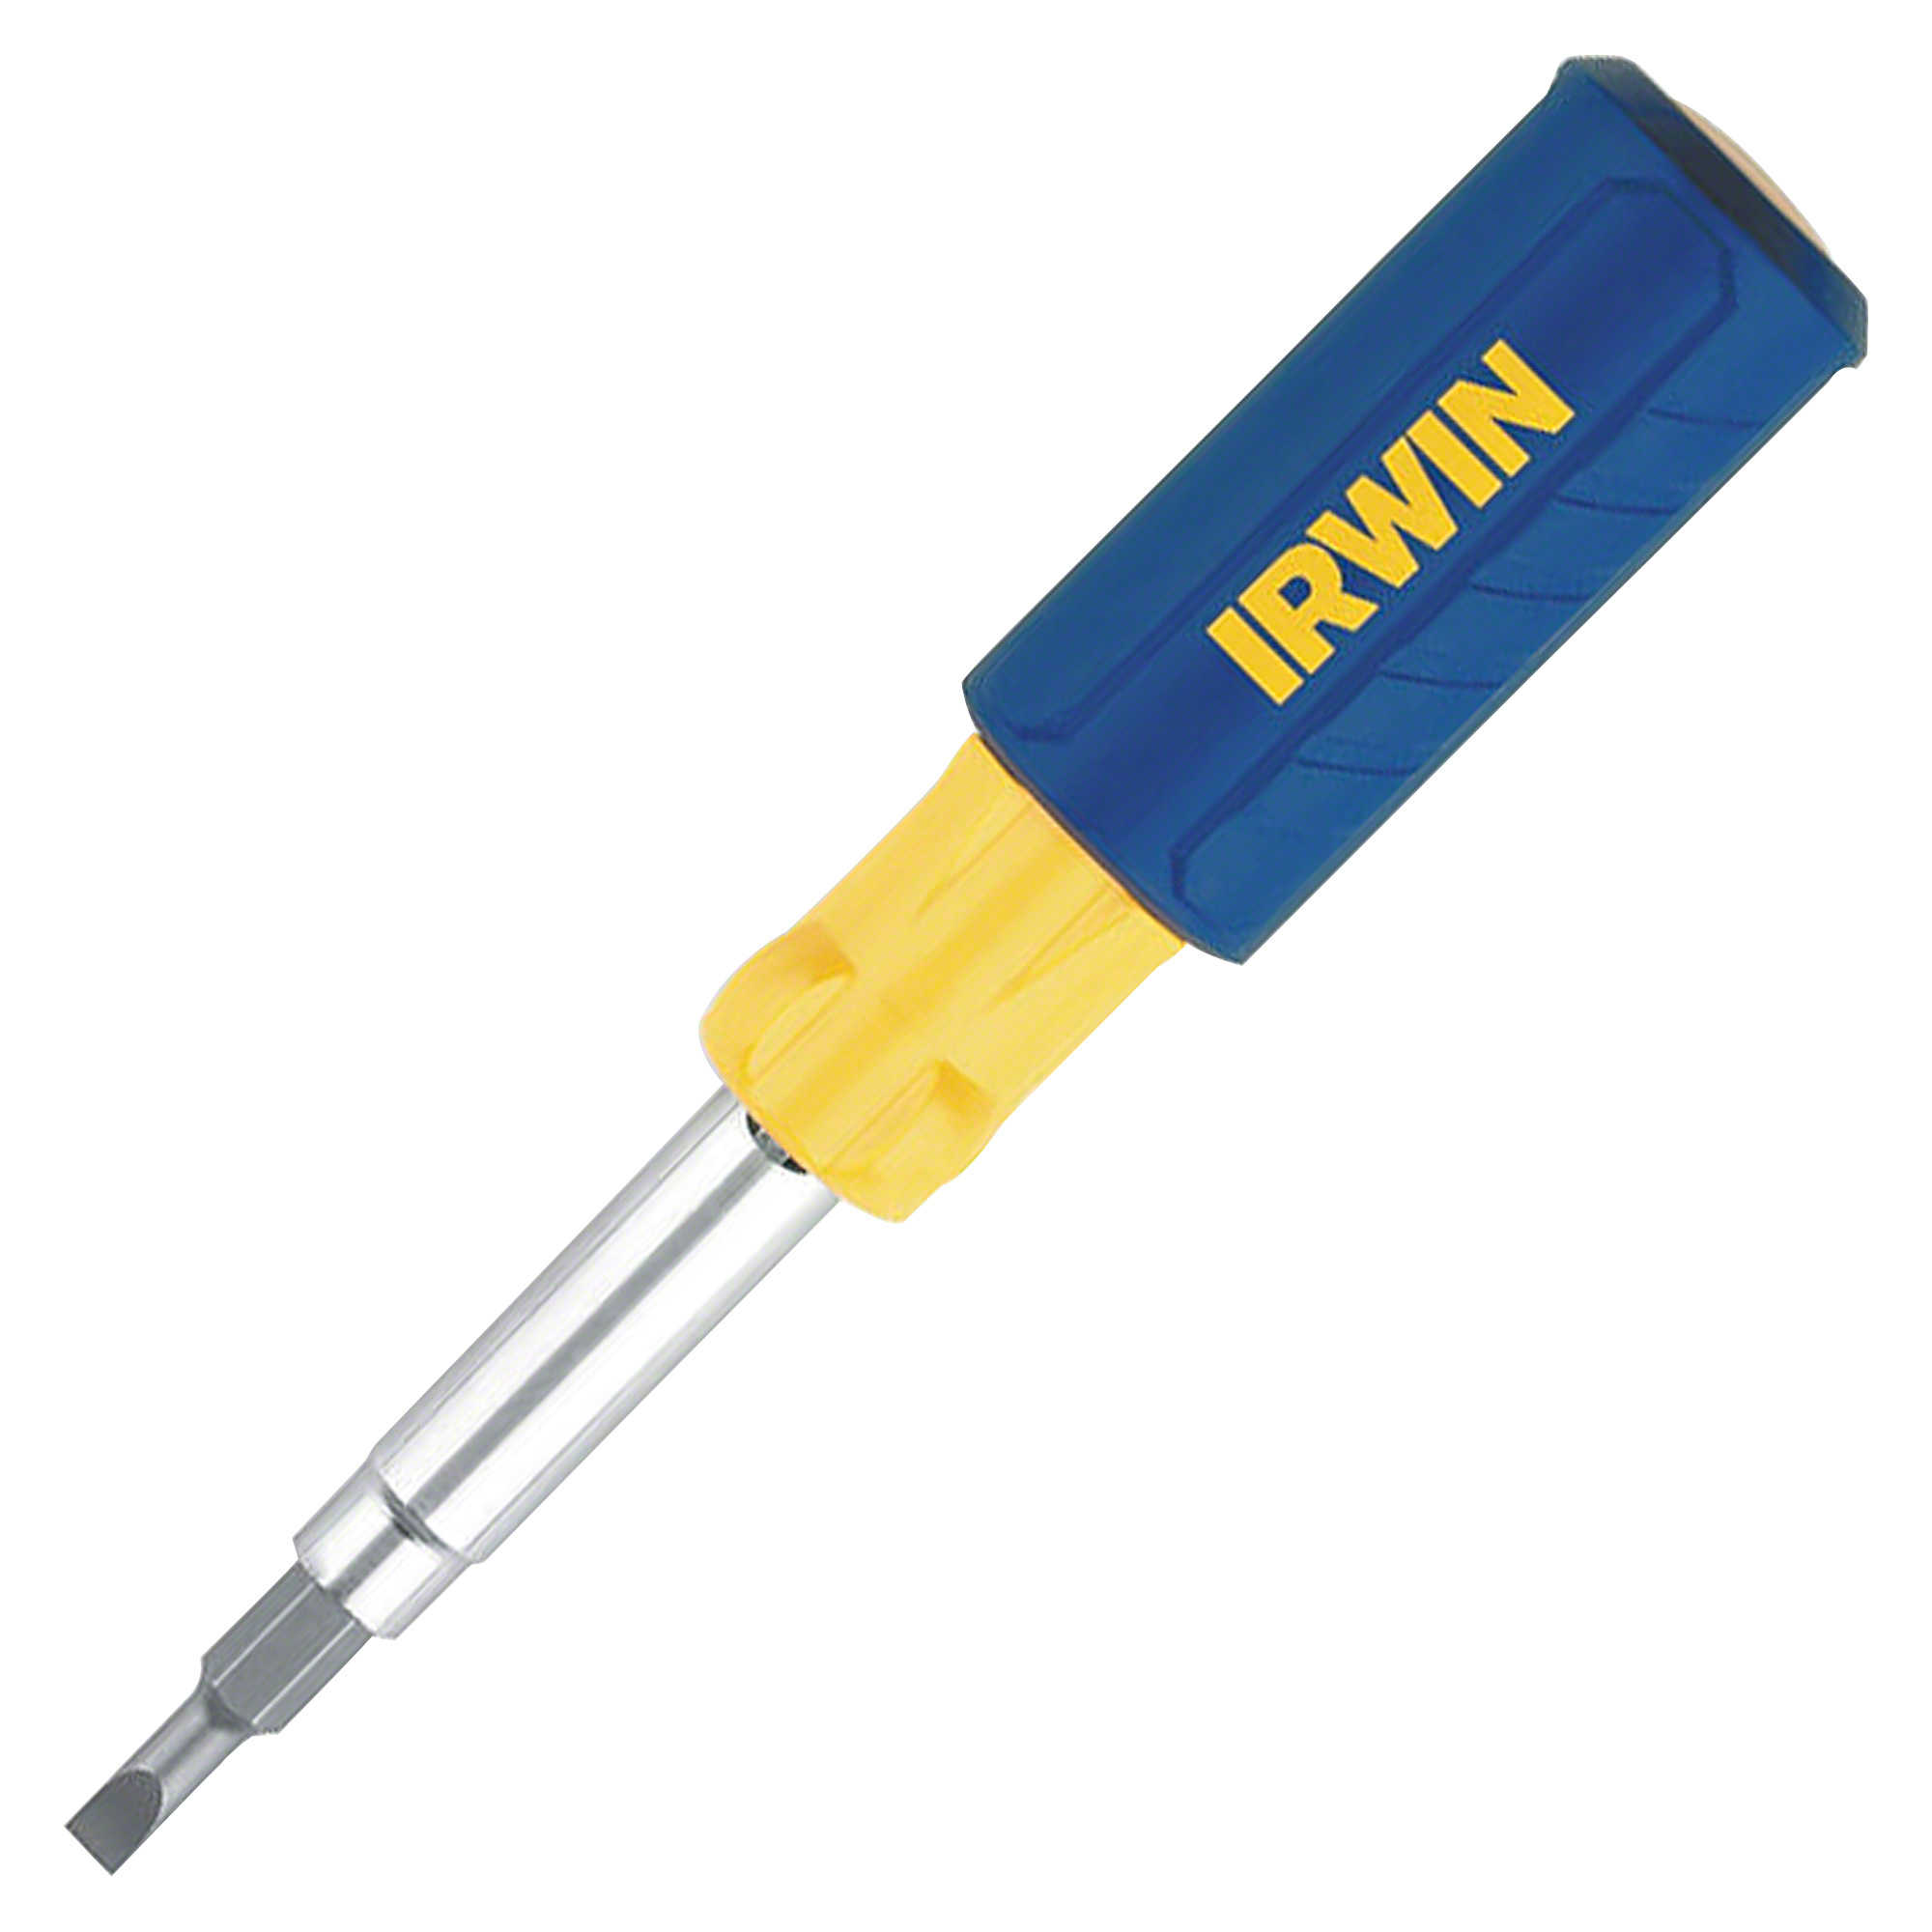 Irwin Industrial Tool 2051100 9-in-1 Multi-Tool